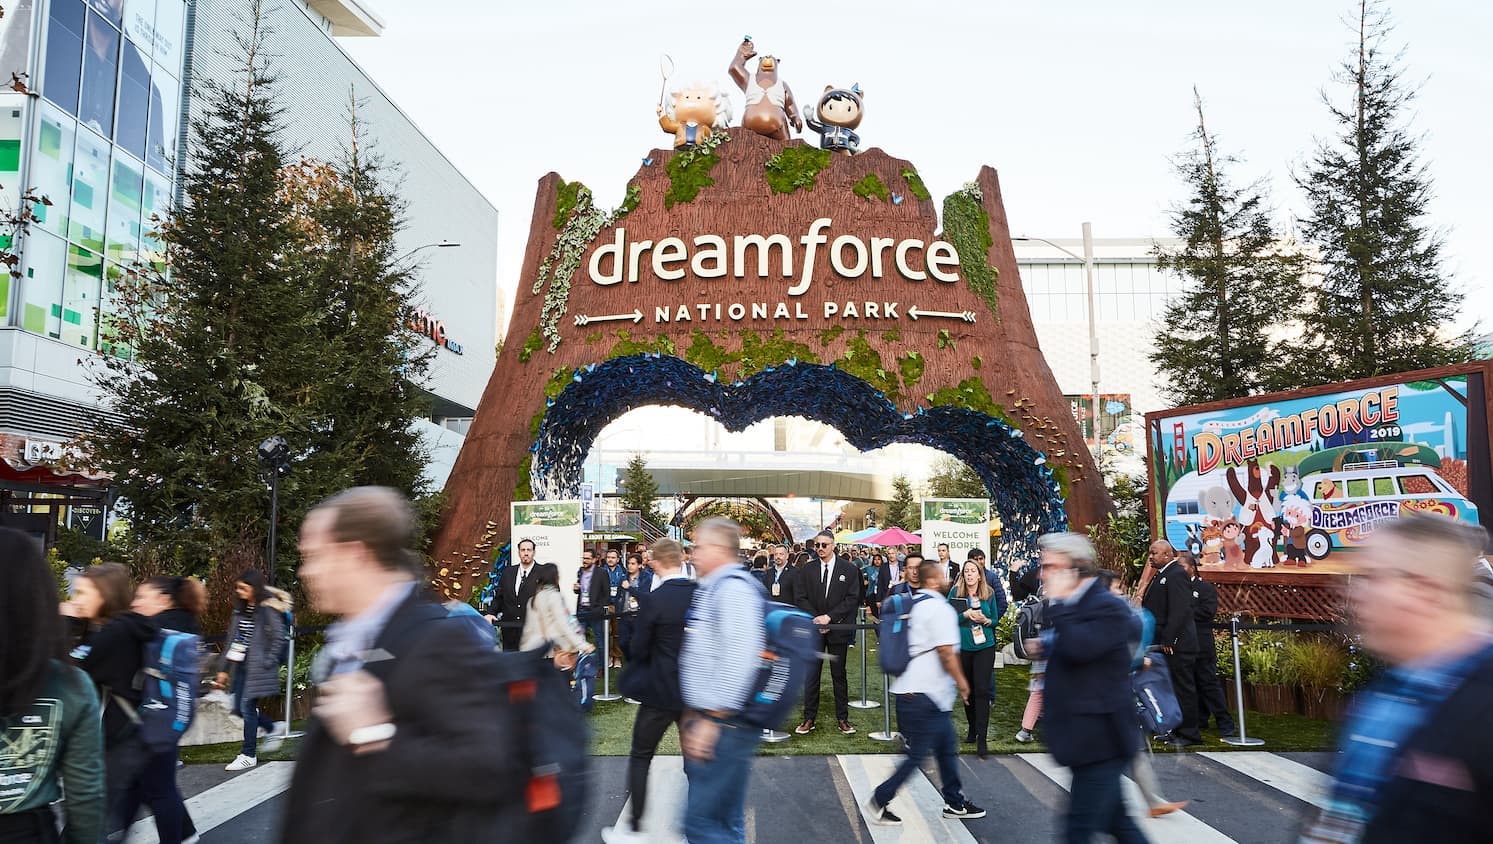 salesforce world tour vs dreamforce